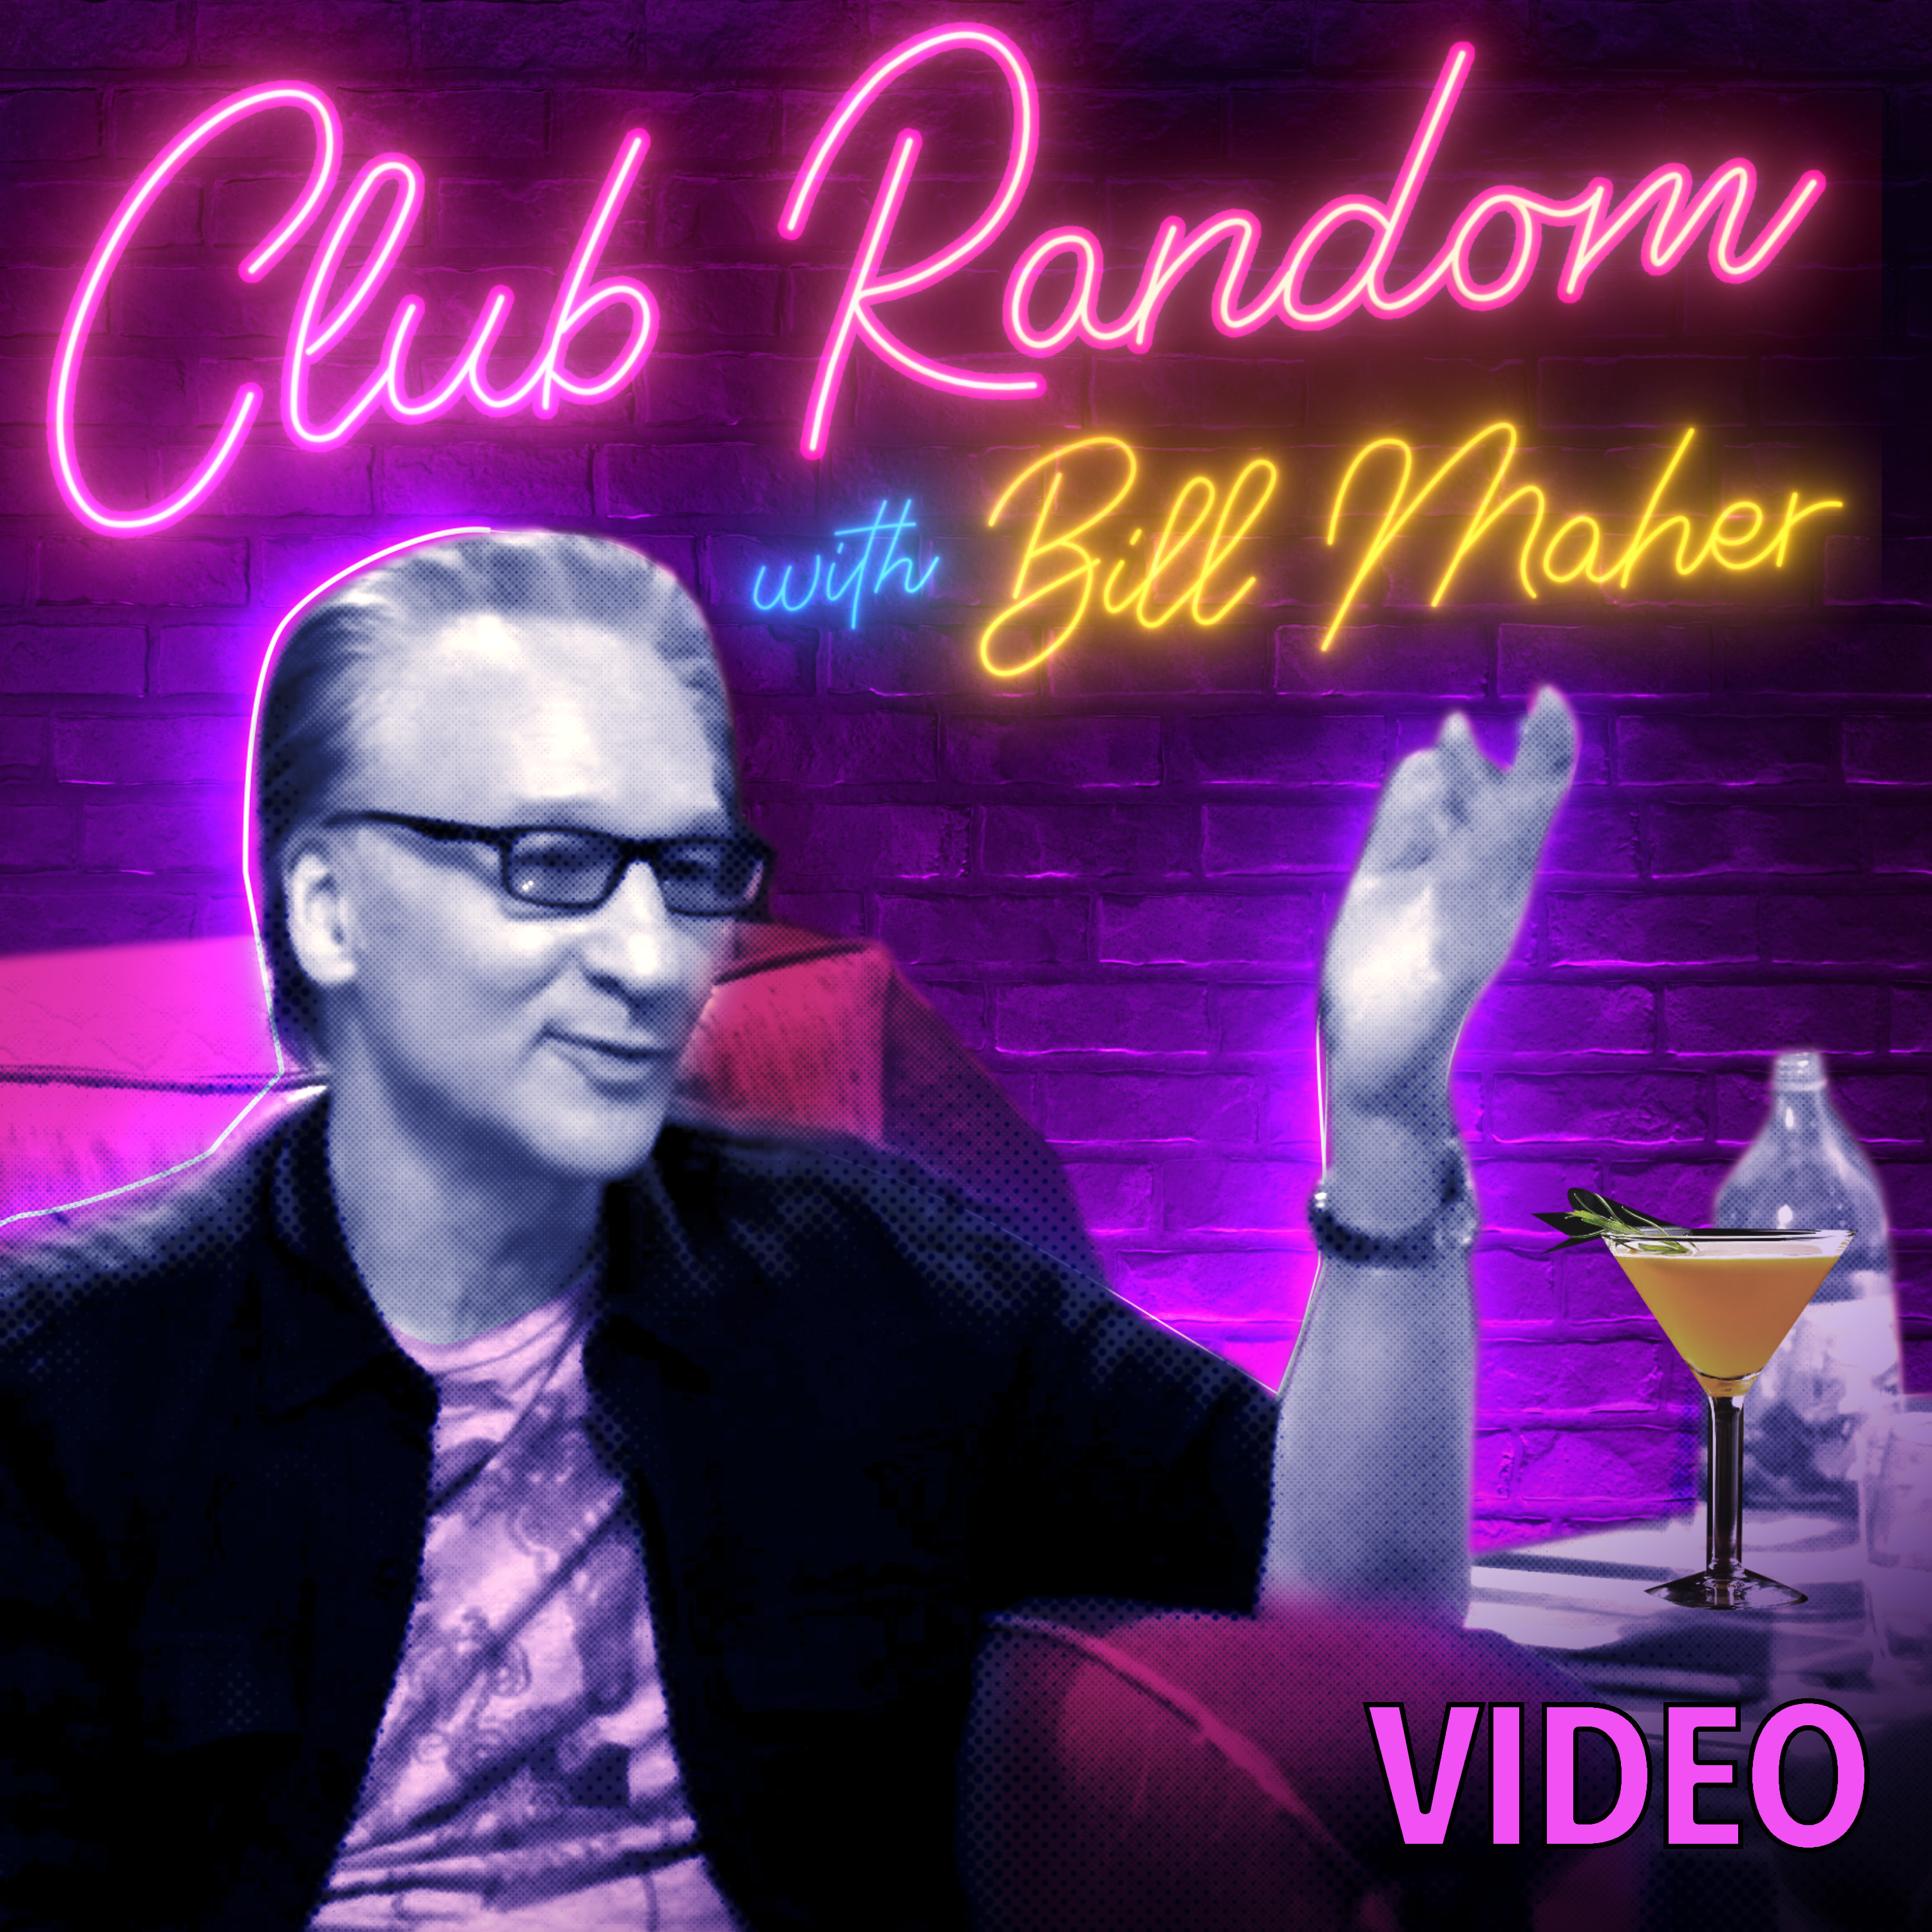 Video: Jon Hamm | Club Random with Bill Maher